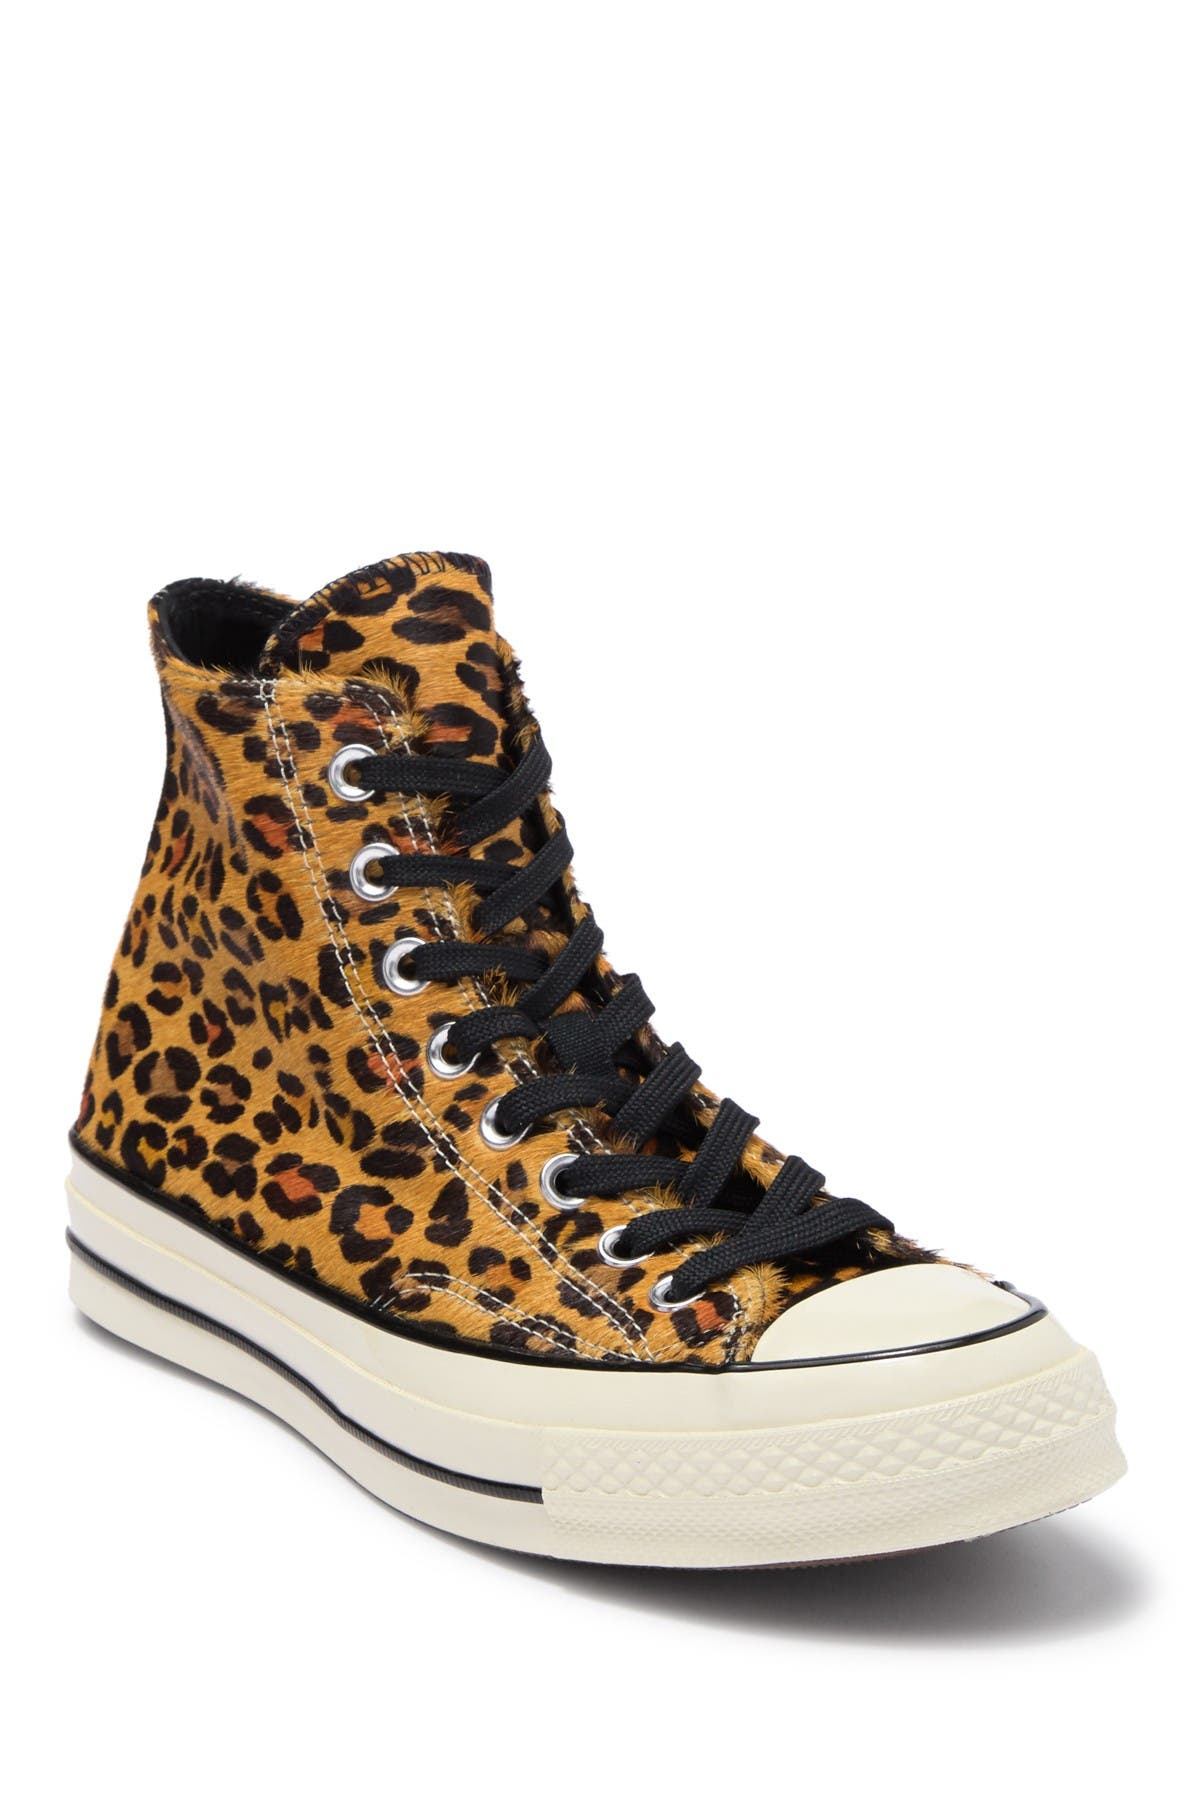 converse chuck 7 leopard high top sneaker